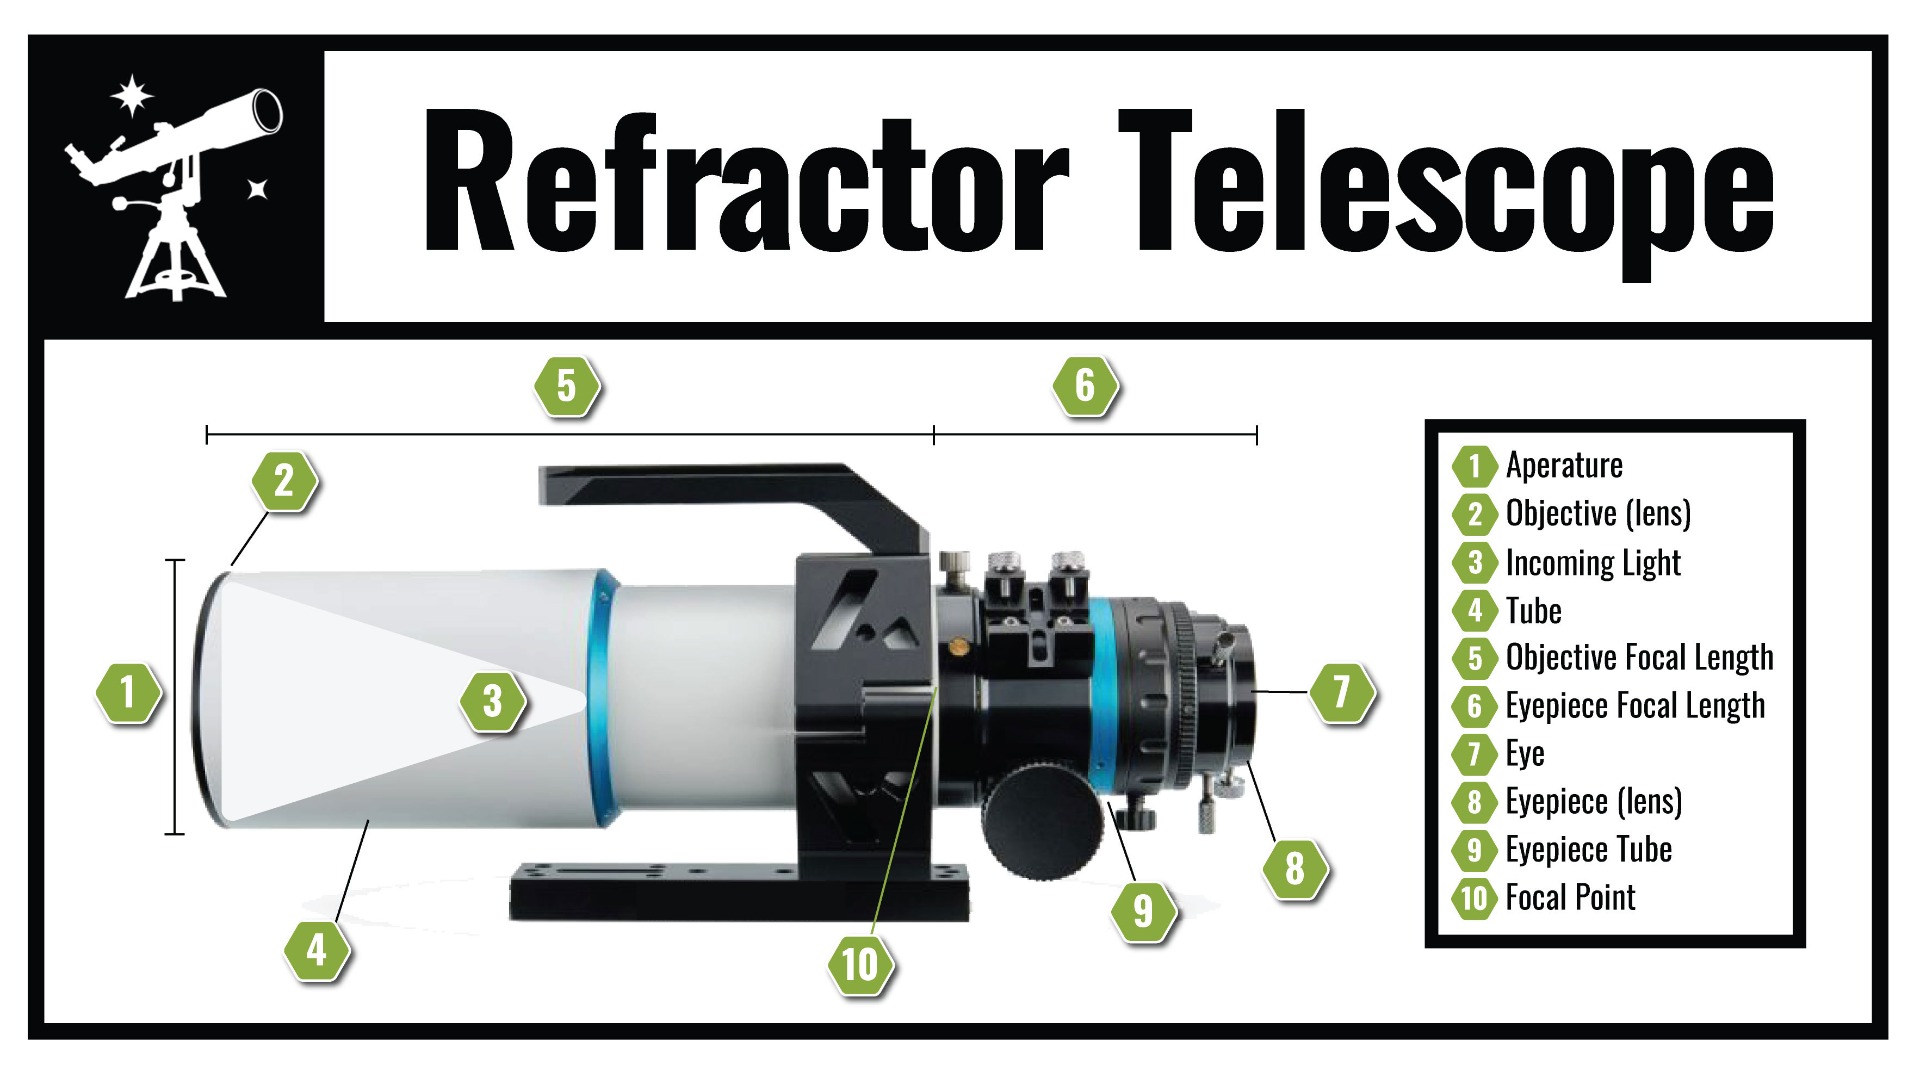 refractor